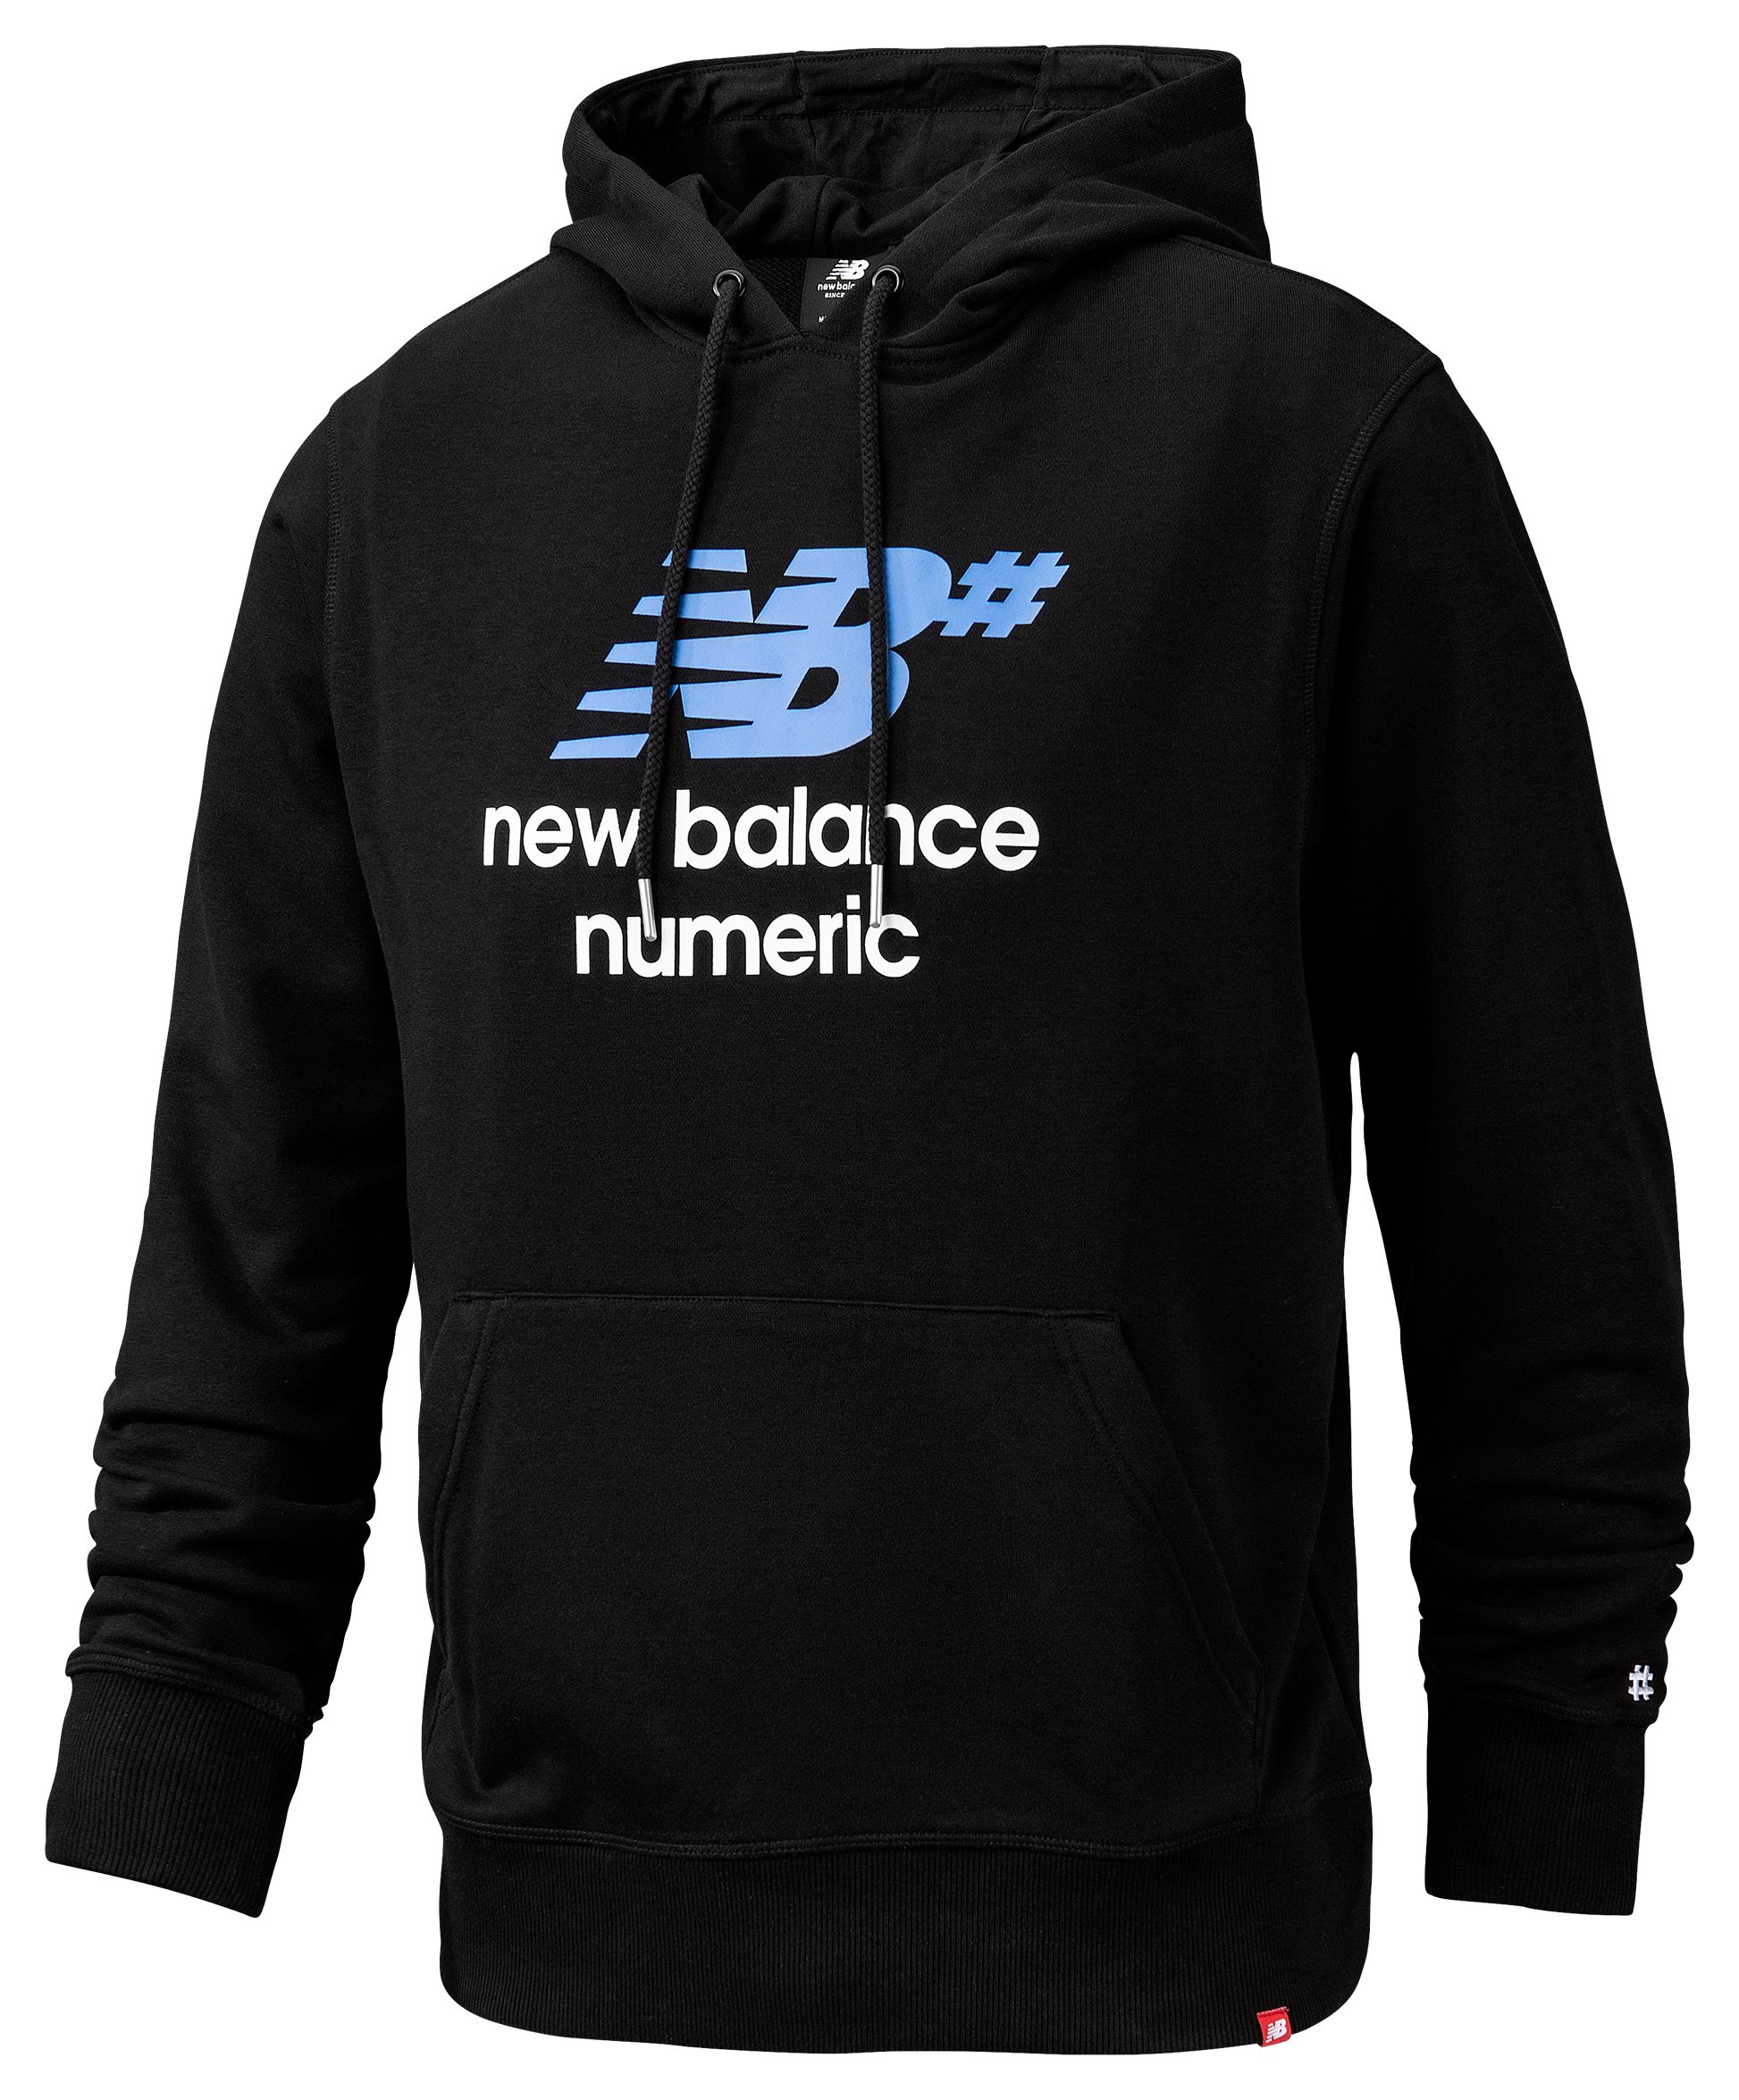 new balance numeric clothing